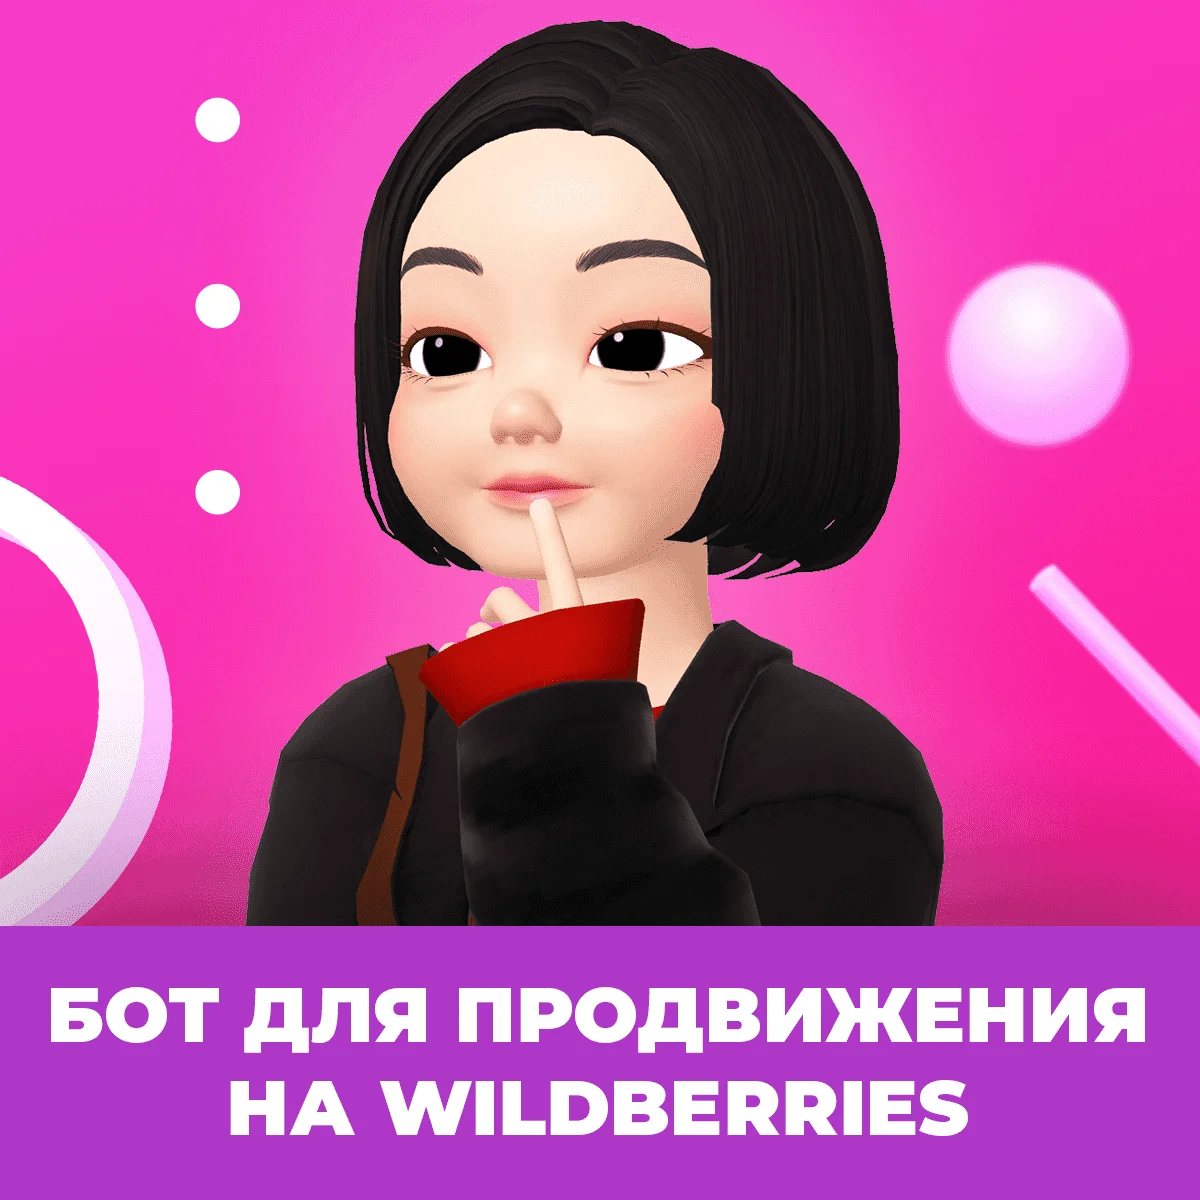 WildBerries запустил рекламу по ключевым словам - запускаем и тестируем!